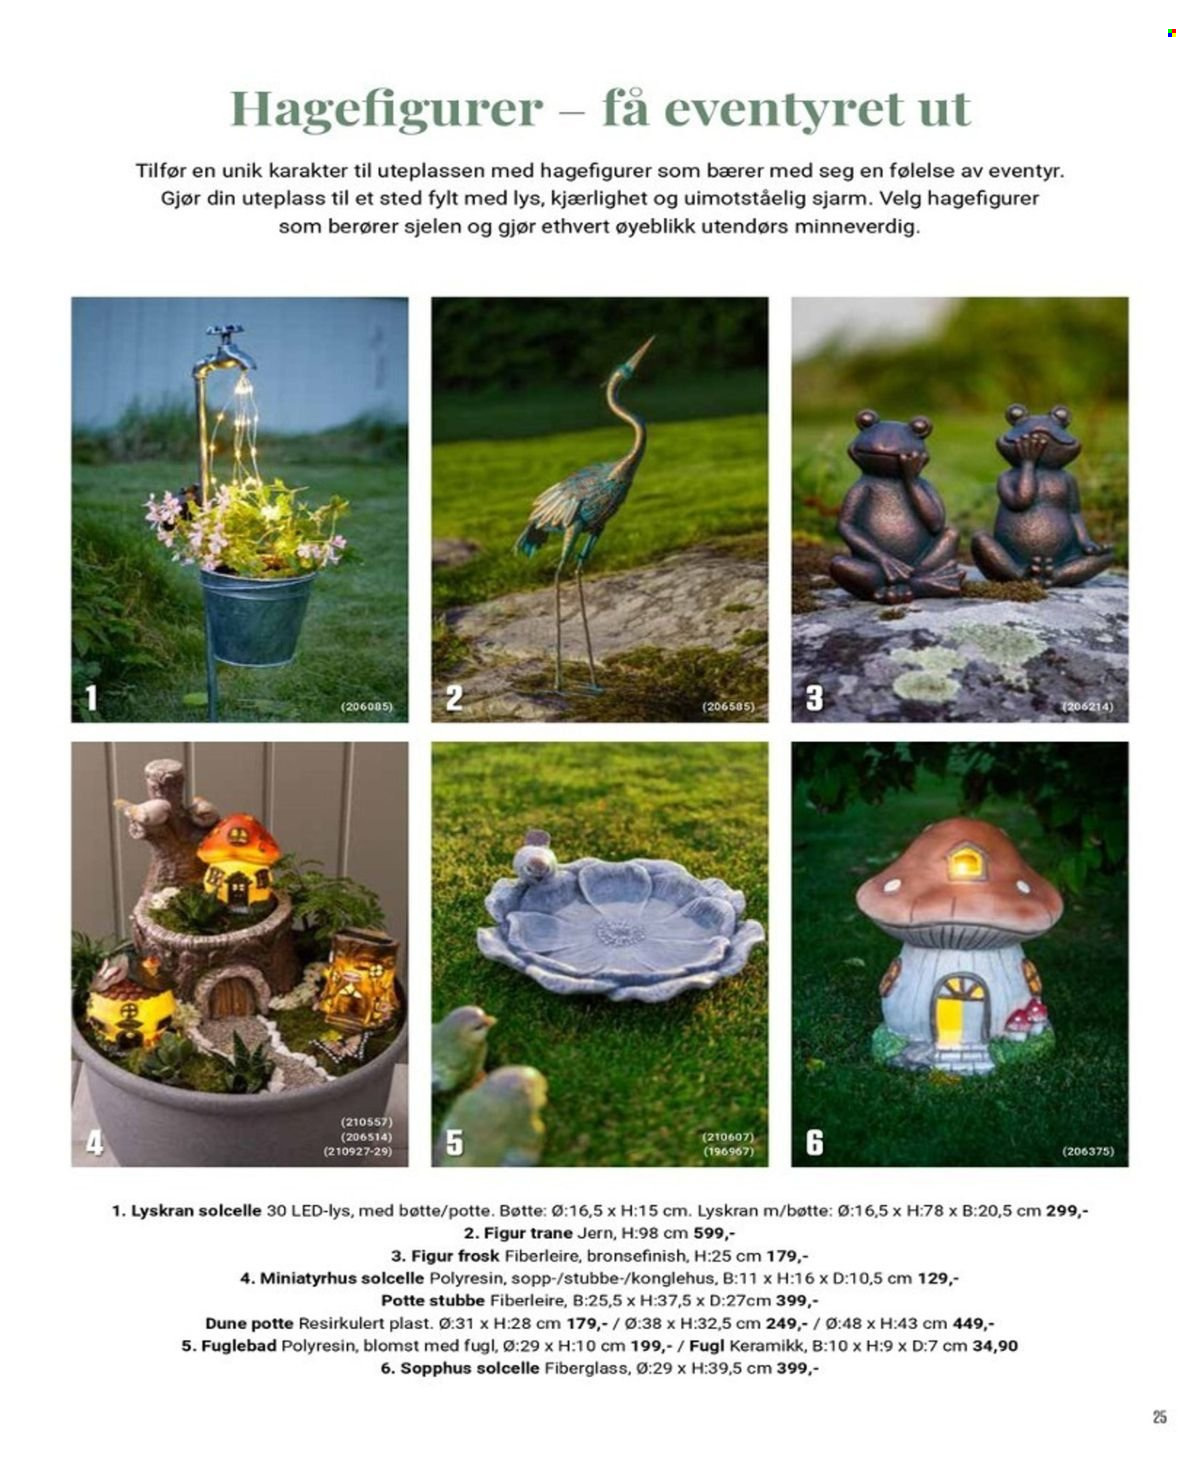 thumbnail - Kundeavis Europris - Produkter fra tilbudsaviser - lys, plastbøtte, figur, LED lys. Side 17.